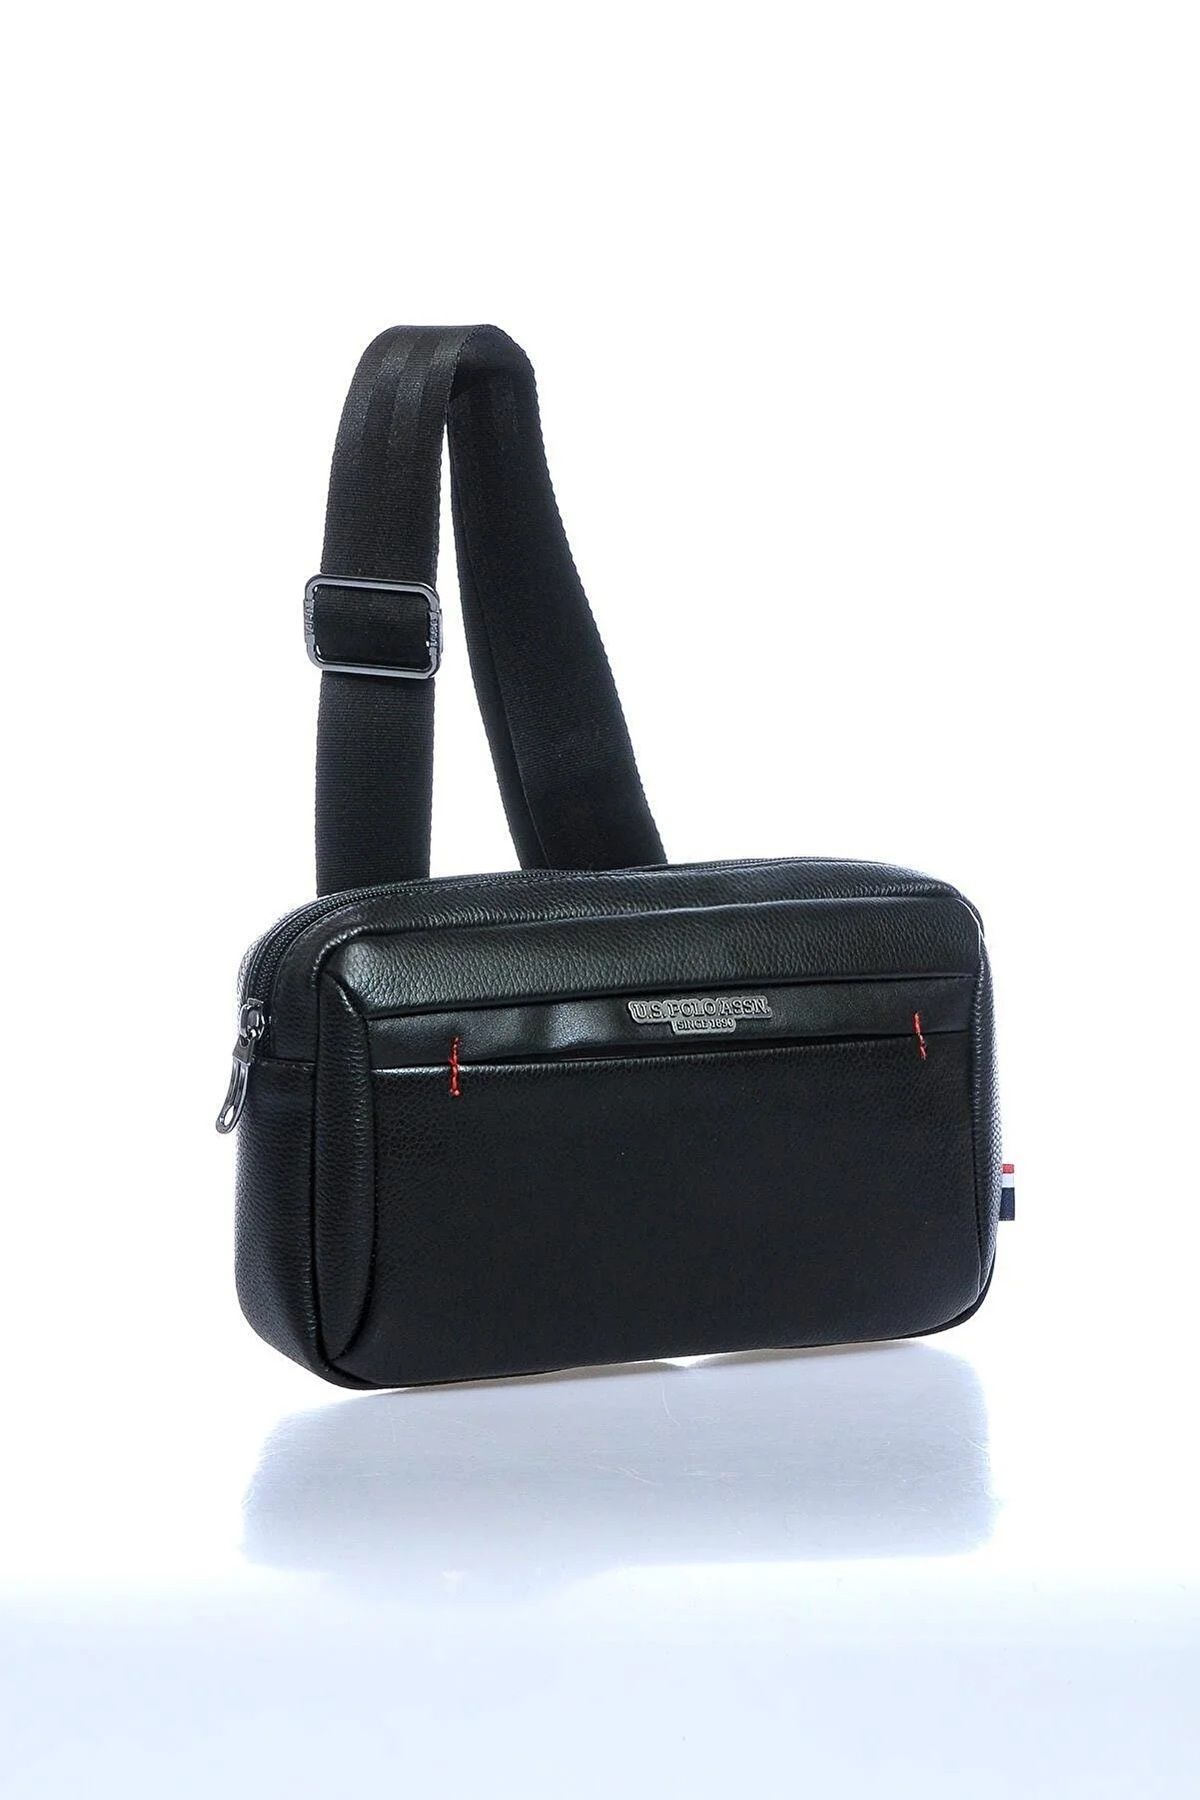 U.S. Polo Assn. U.S. Polo Assn 21559 Unisex bel çantası omuz çantası SİYAH